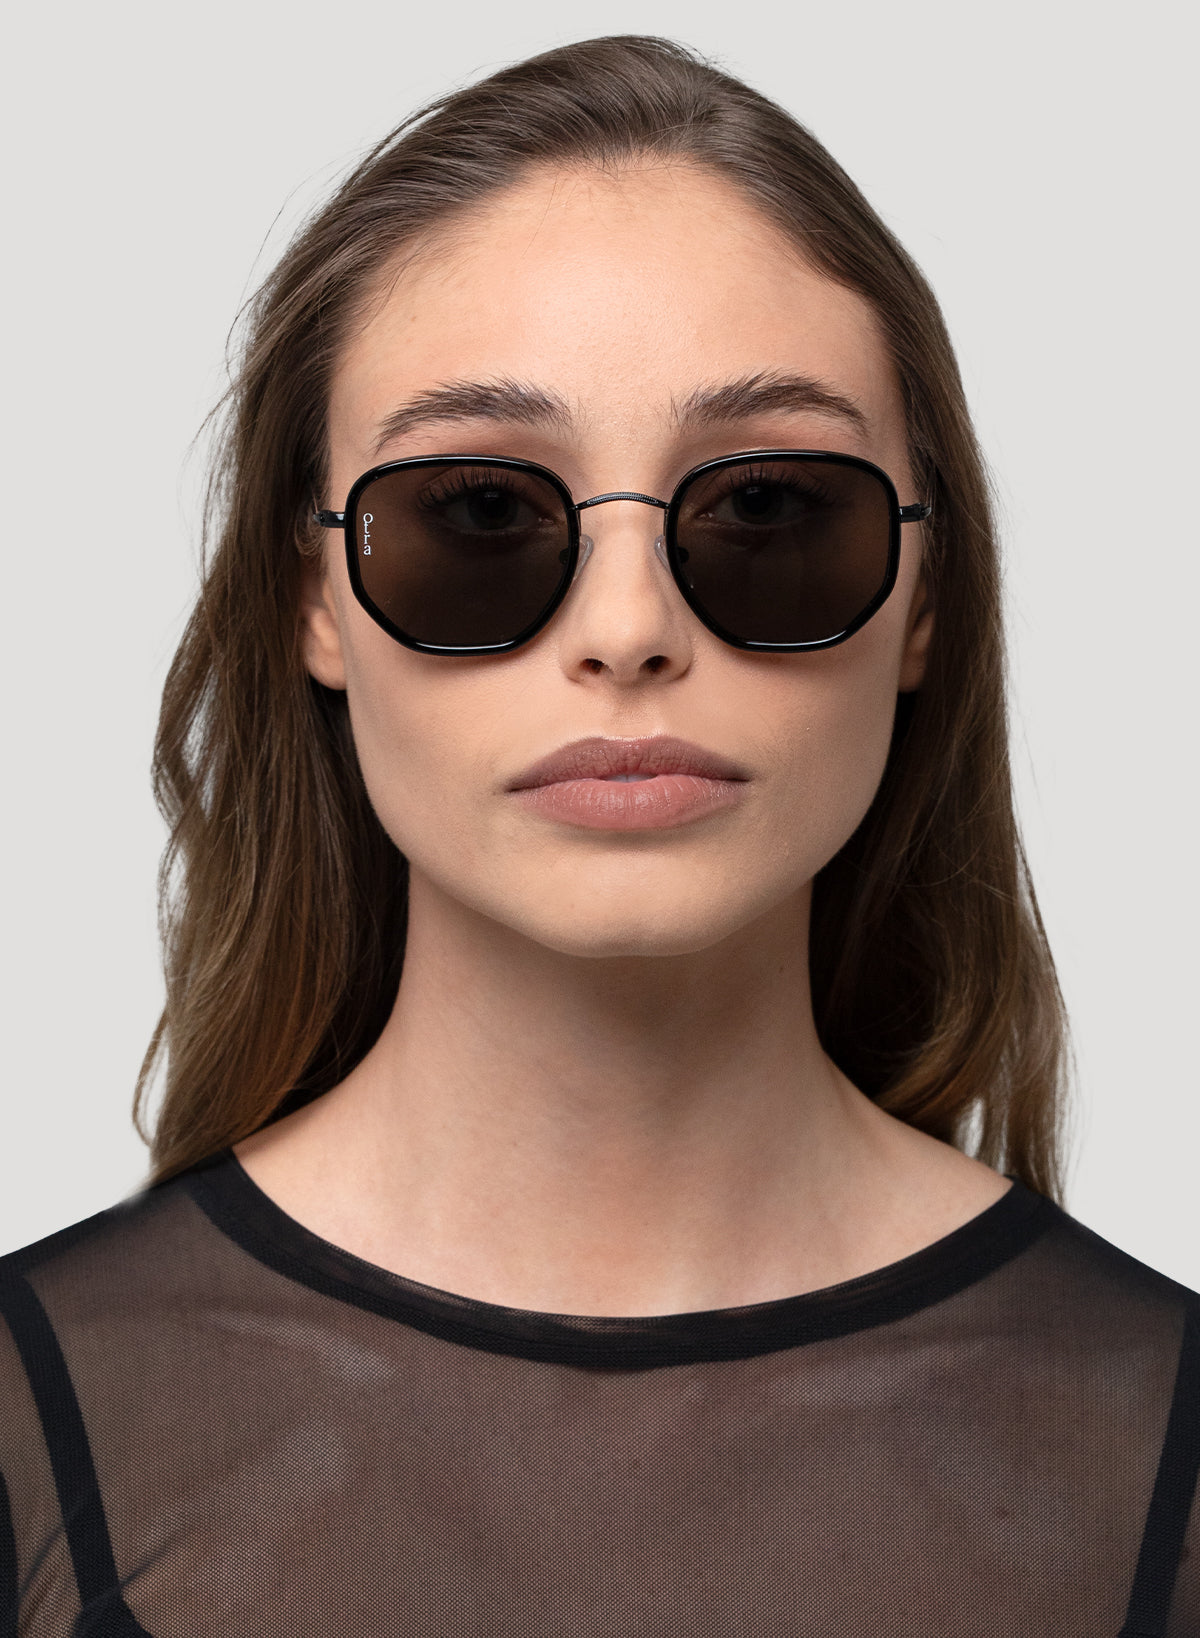 Model wearing Rectangular Tate glasses in black lenses with black frame